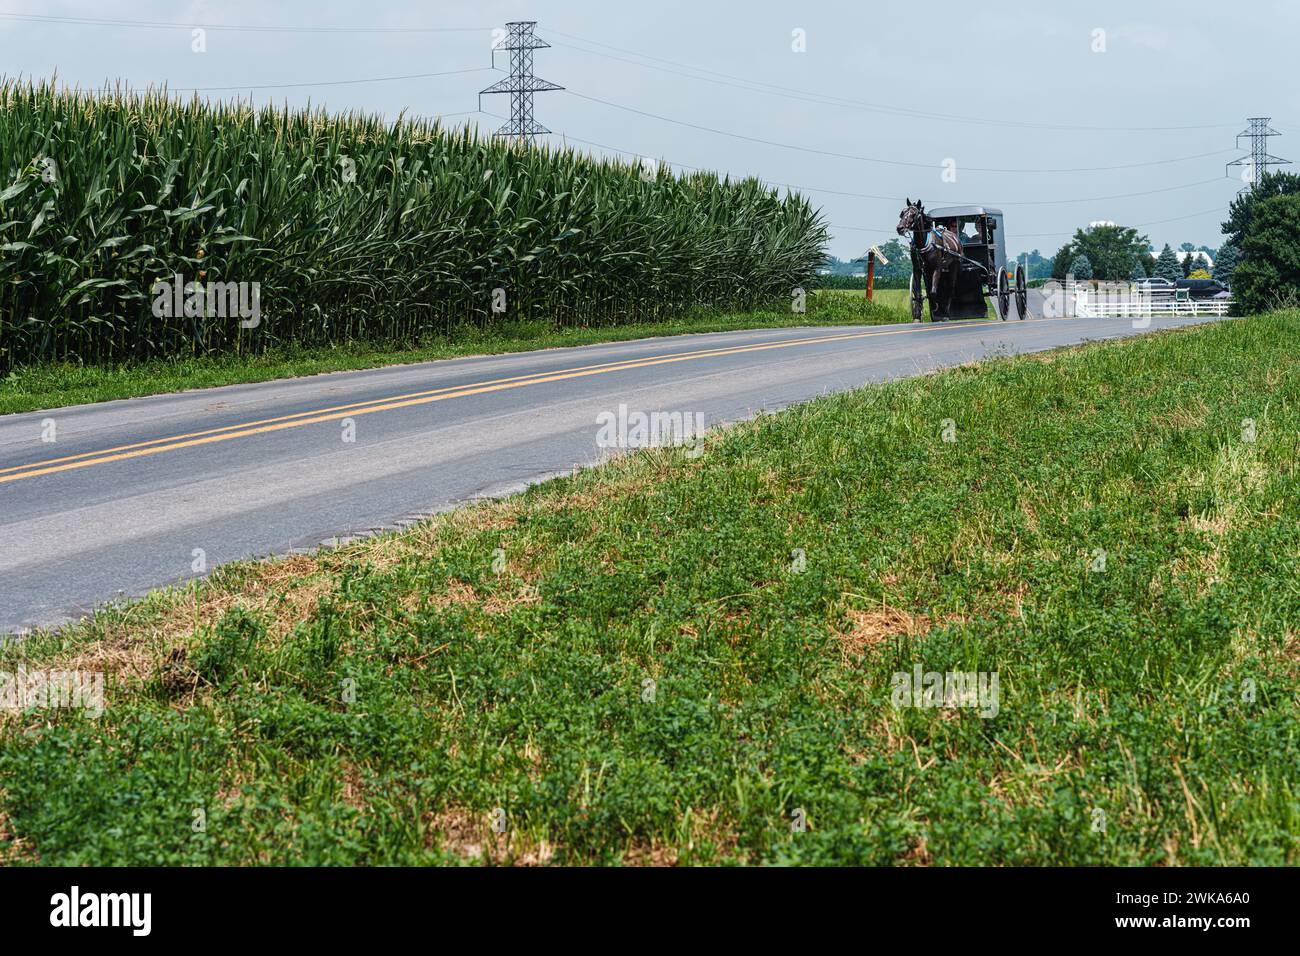 Pferde und Buggy sind das bevorzugte Transportmittel der Amischen, mit Maisfeld auf der linken und modernen Fahrzeugen ganz rechts. Stockfoto